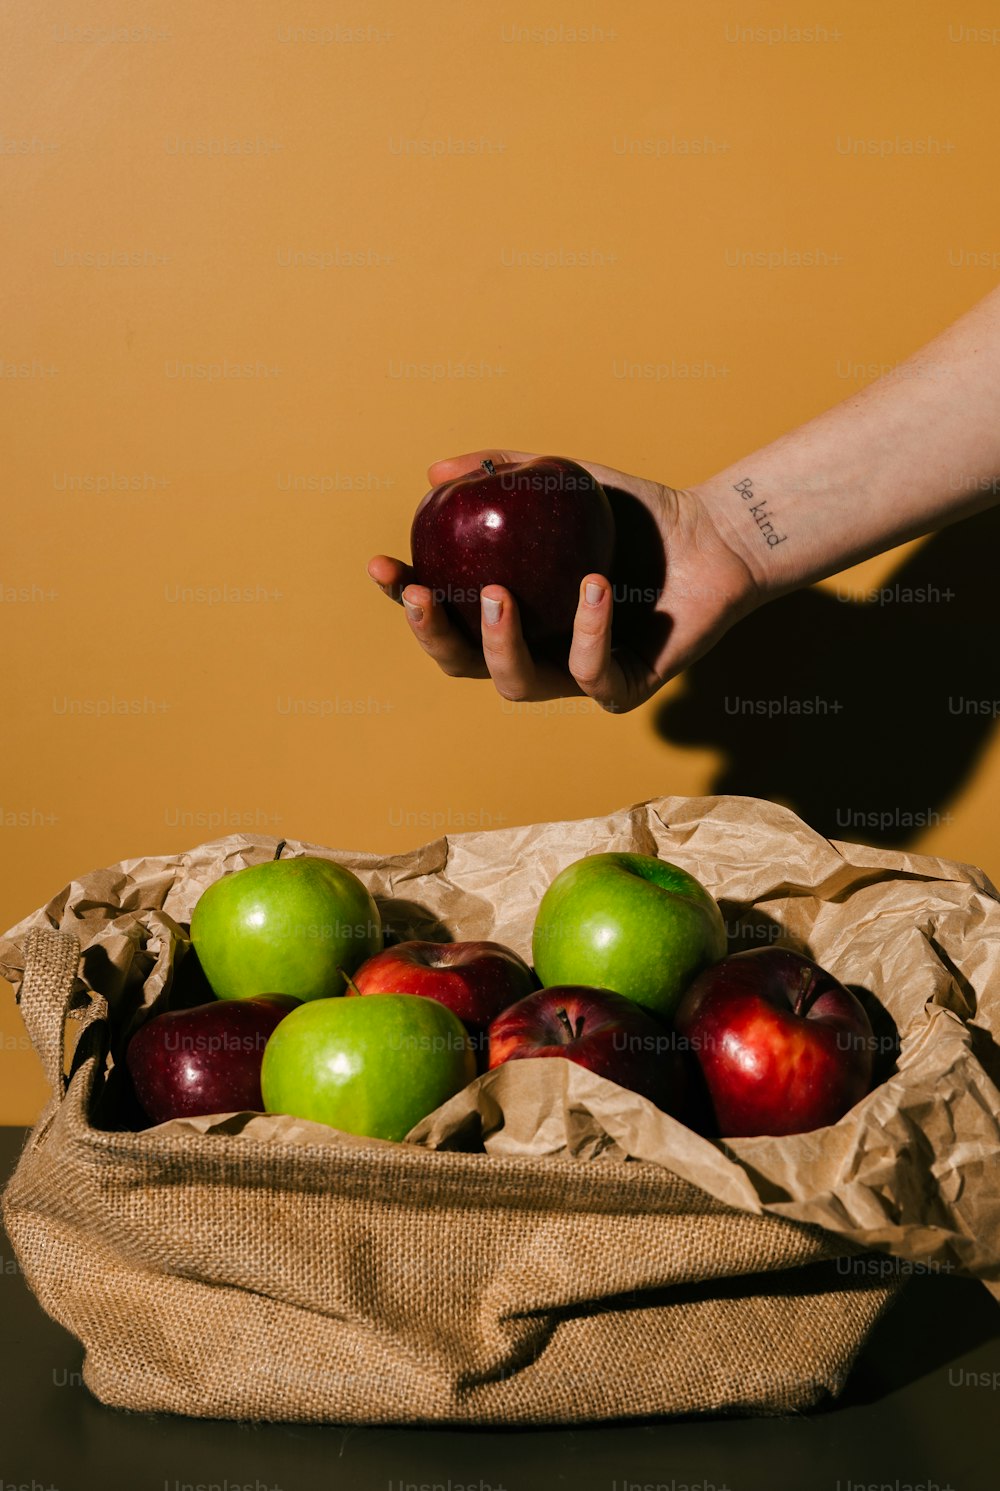 Una persona sosteniendo una manzana frente a una canasta de manzanas